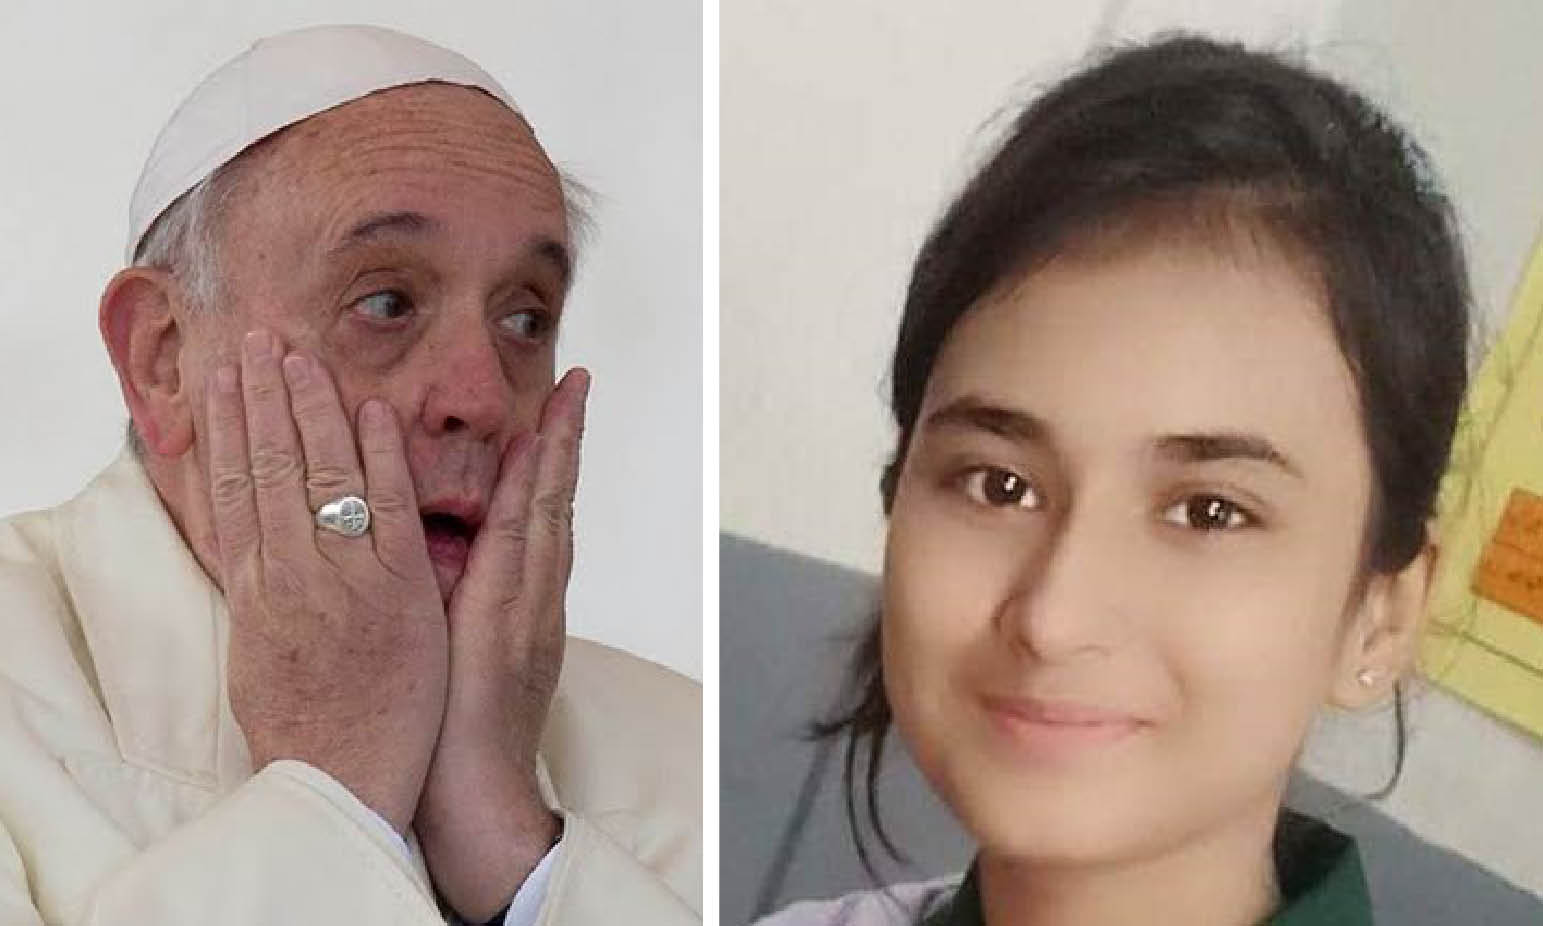 Appello al Papa per Huma Younas, la 14enne cristiana sequestrata e forzata all’Islam per sposare il rapitore